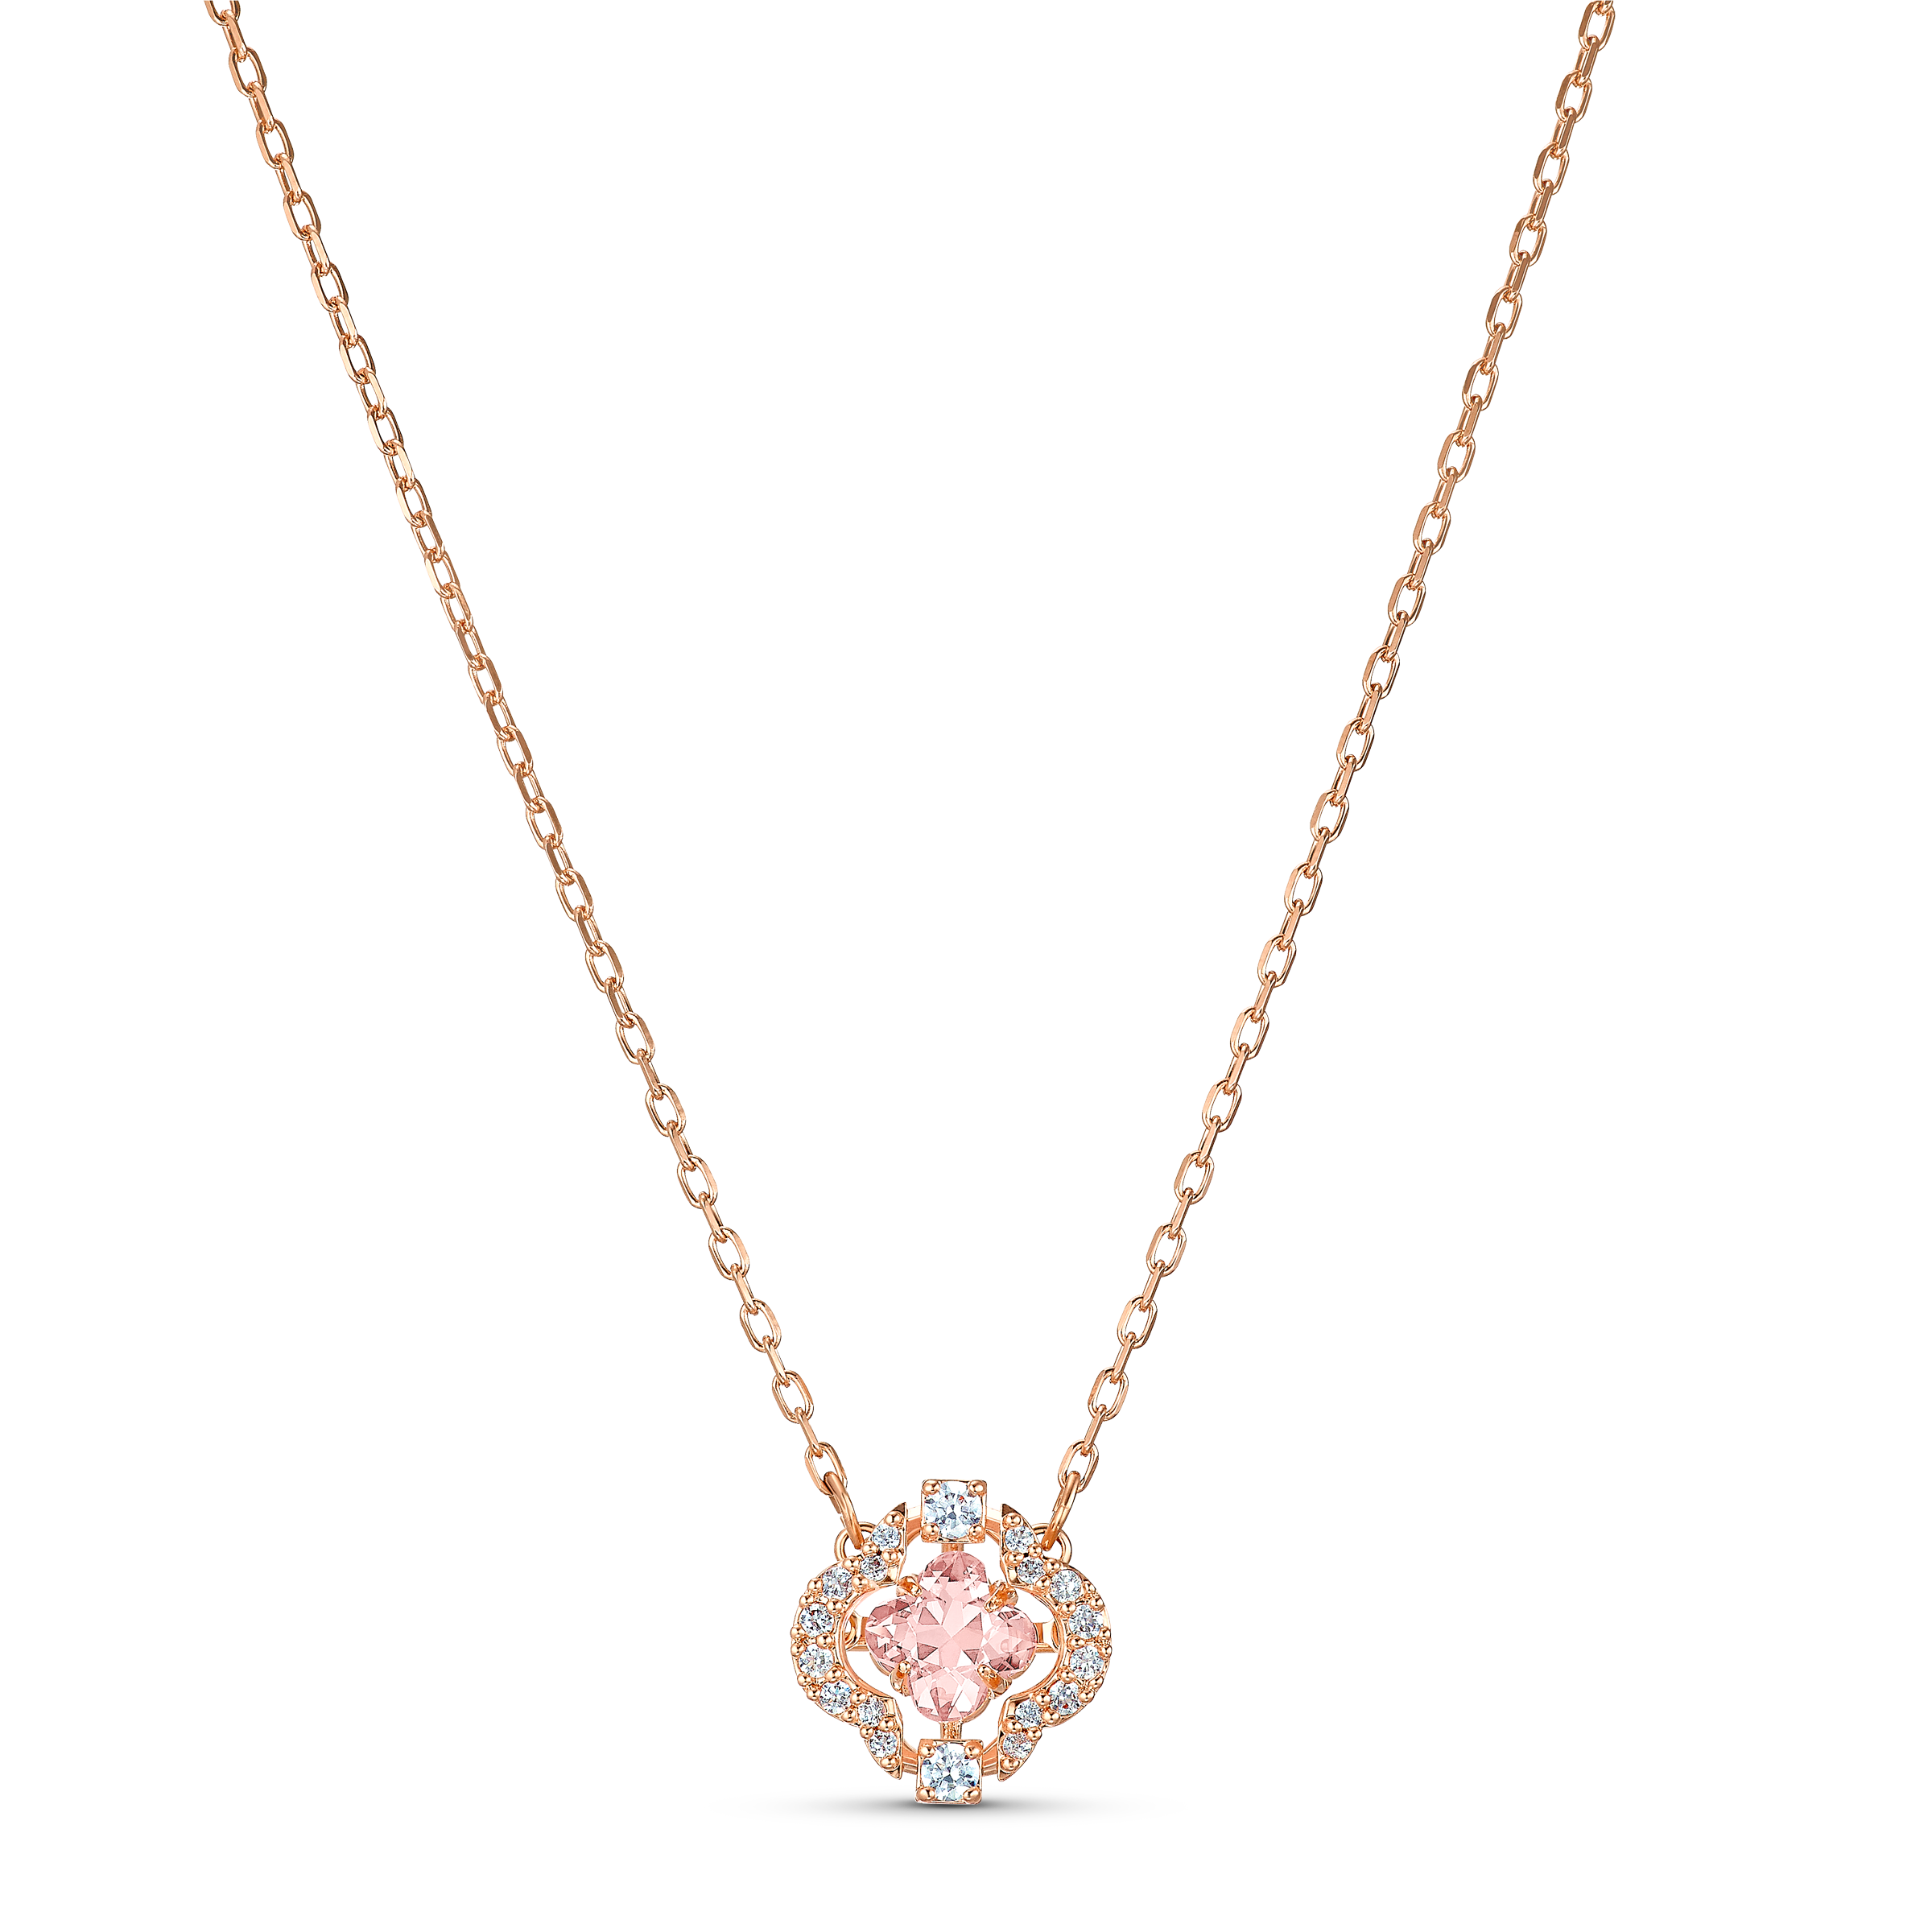 Buy Swarovski Swarovski Sparkling Dance Necklace, Pink, Rose-gold tone ...